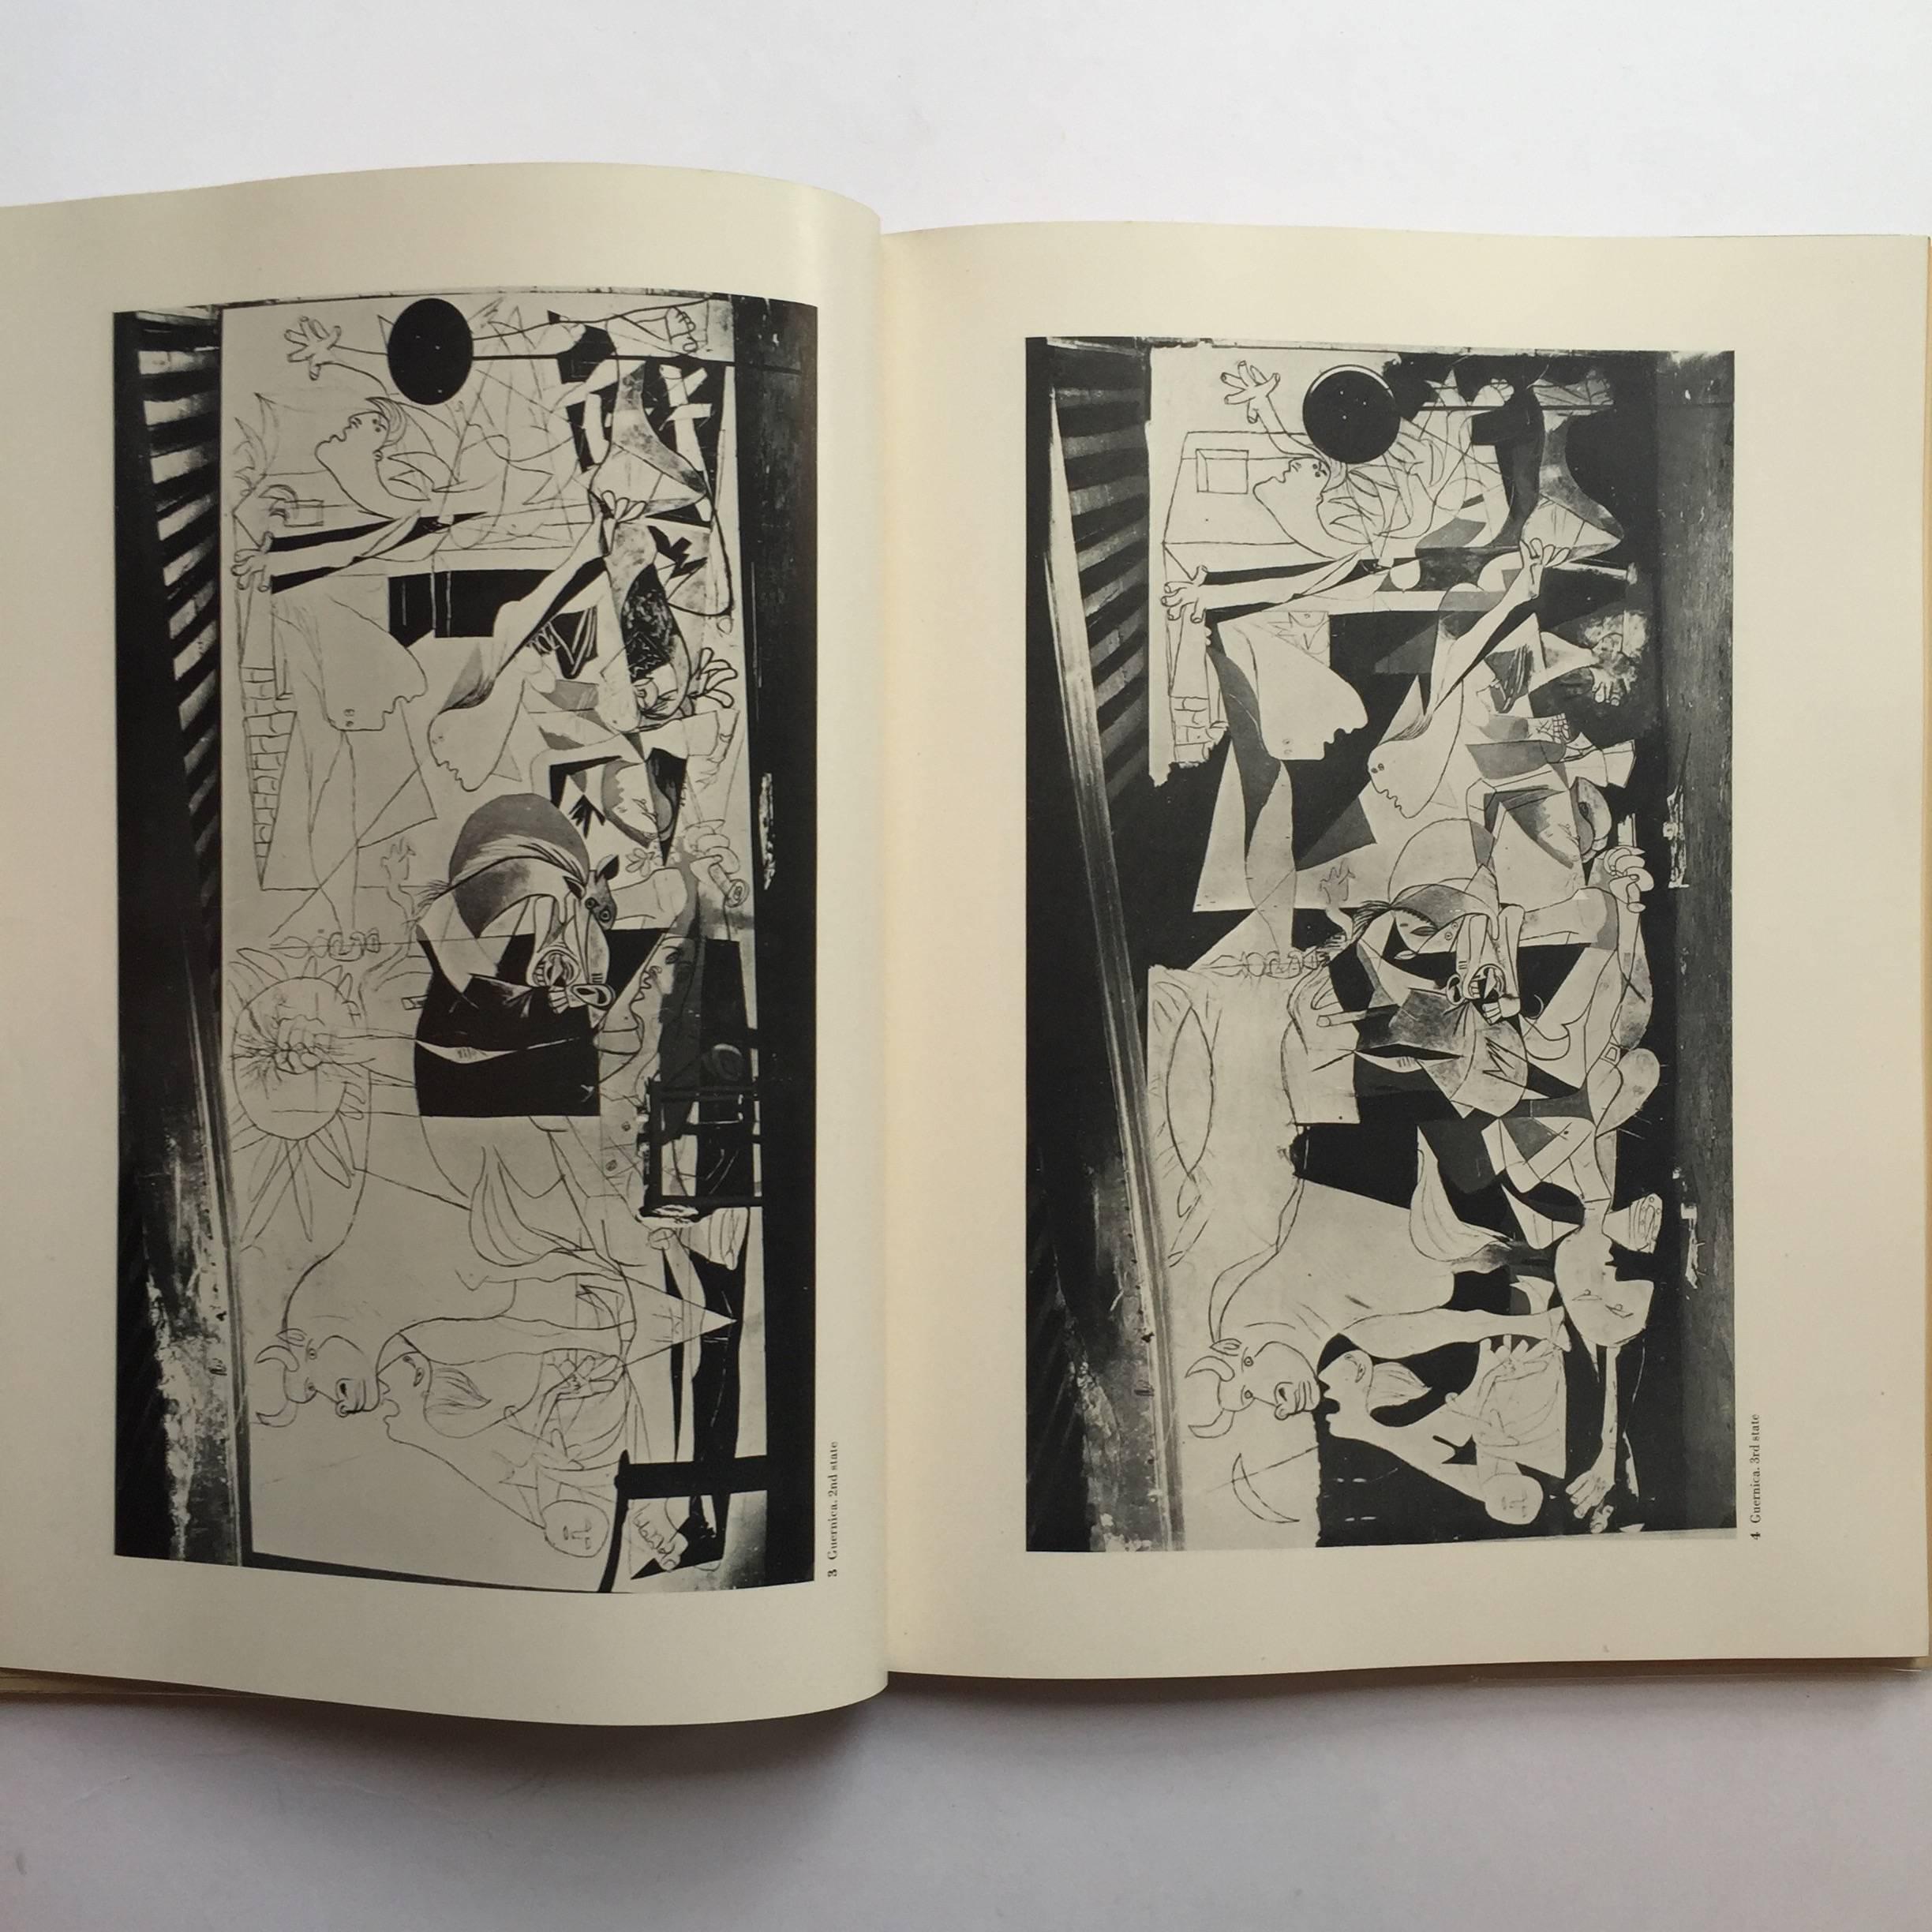 American Picasso, Guernica Book, 1947